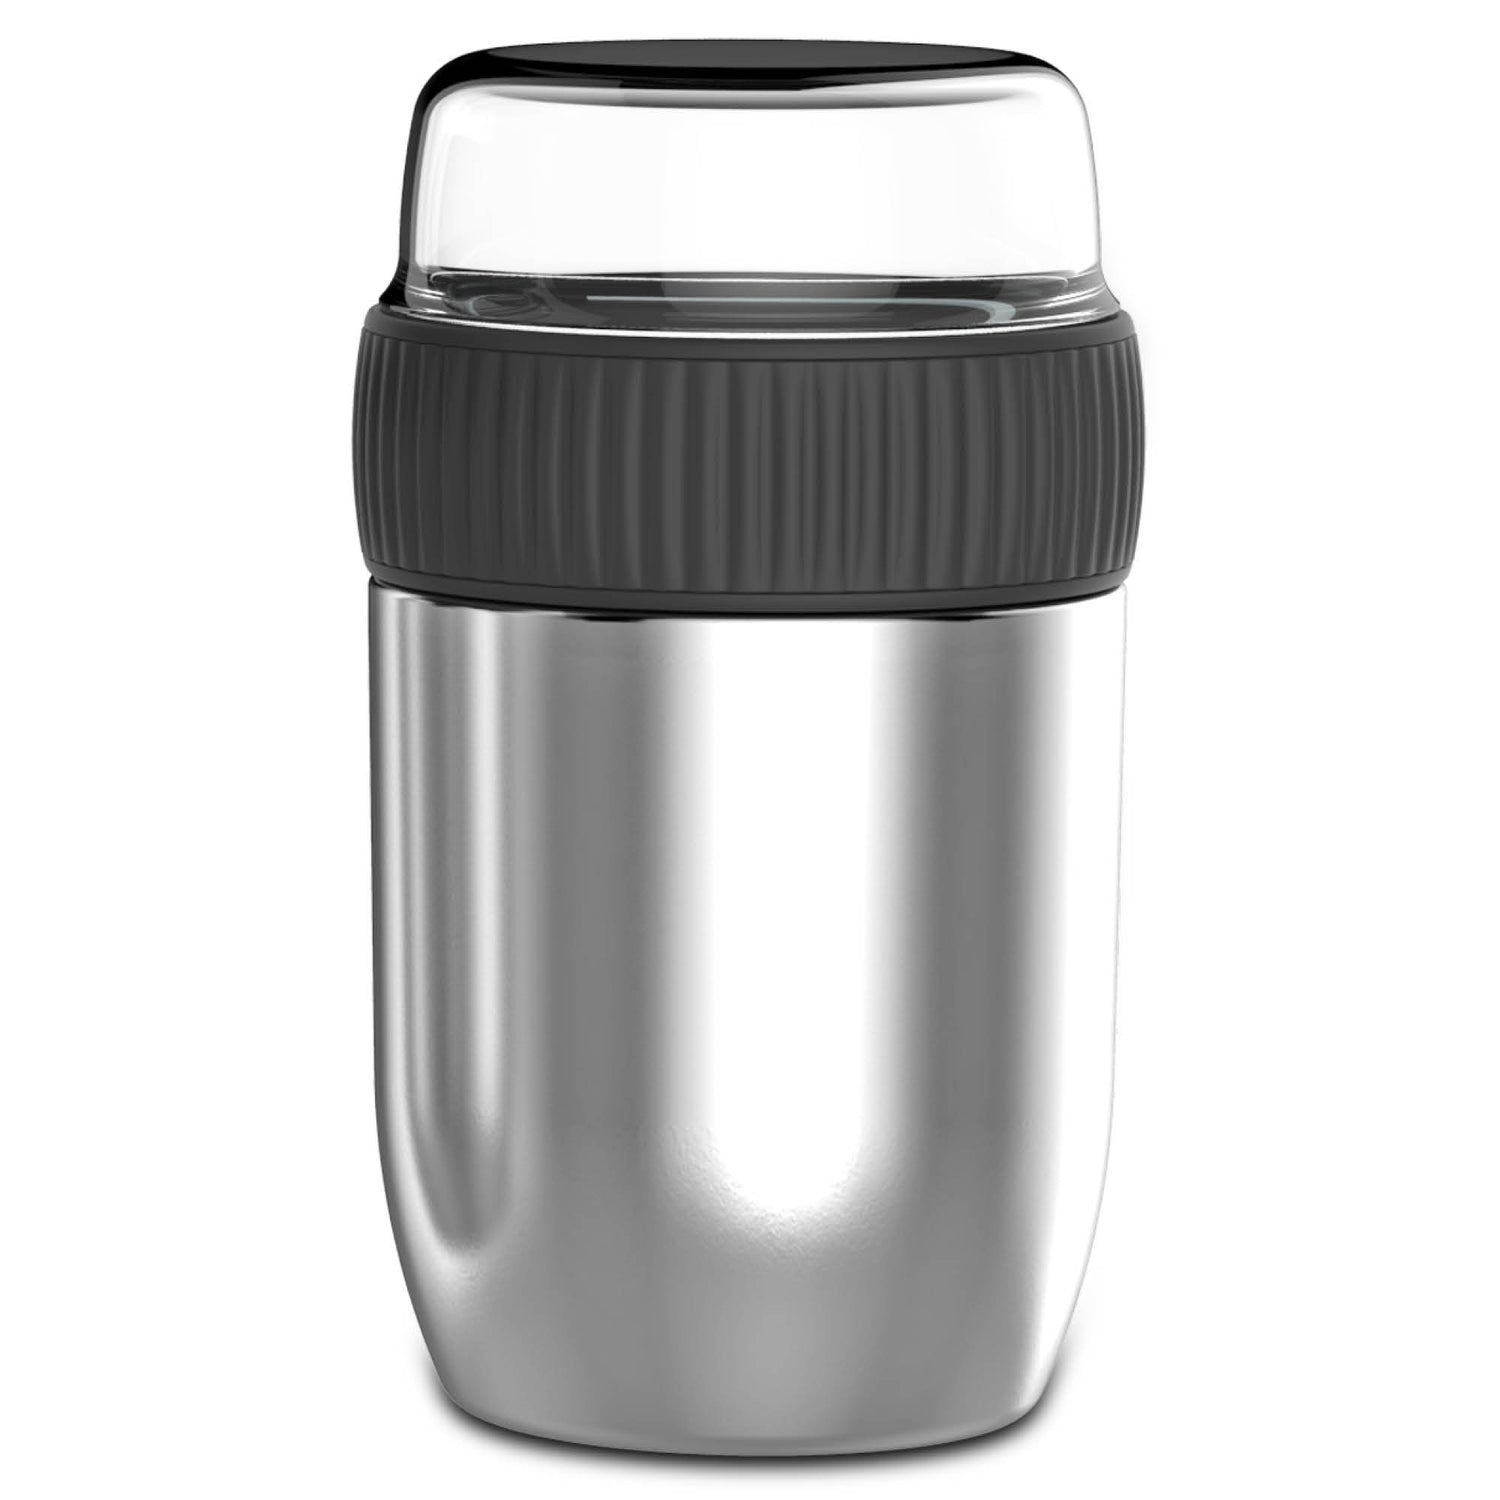 Coninx Thermos Lunchbox - MUESLI CUP zum Go - Joghurt Cup zu gehen